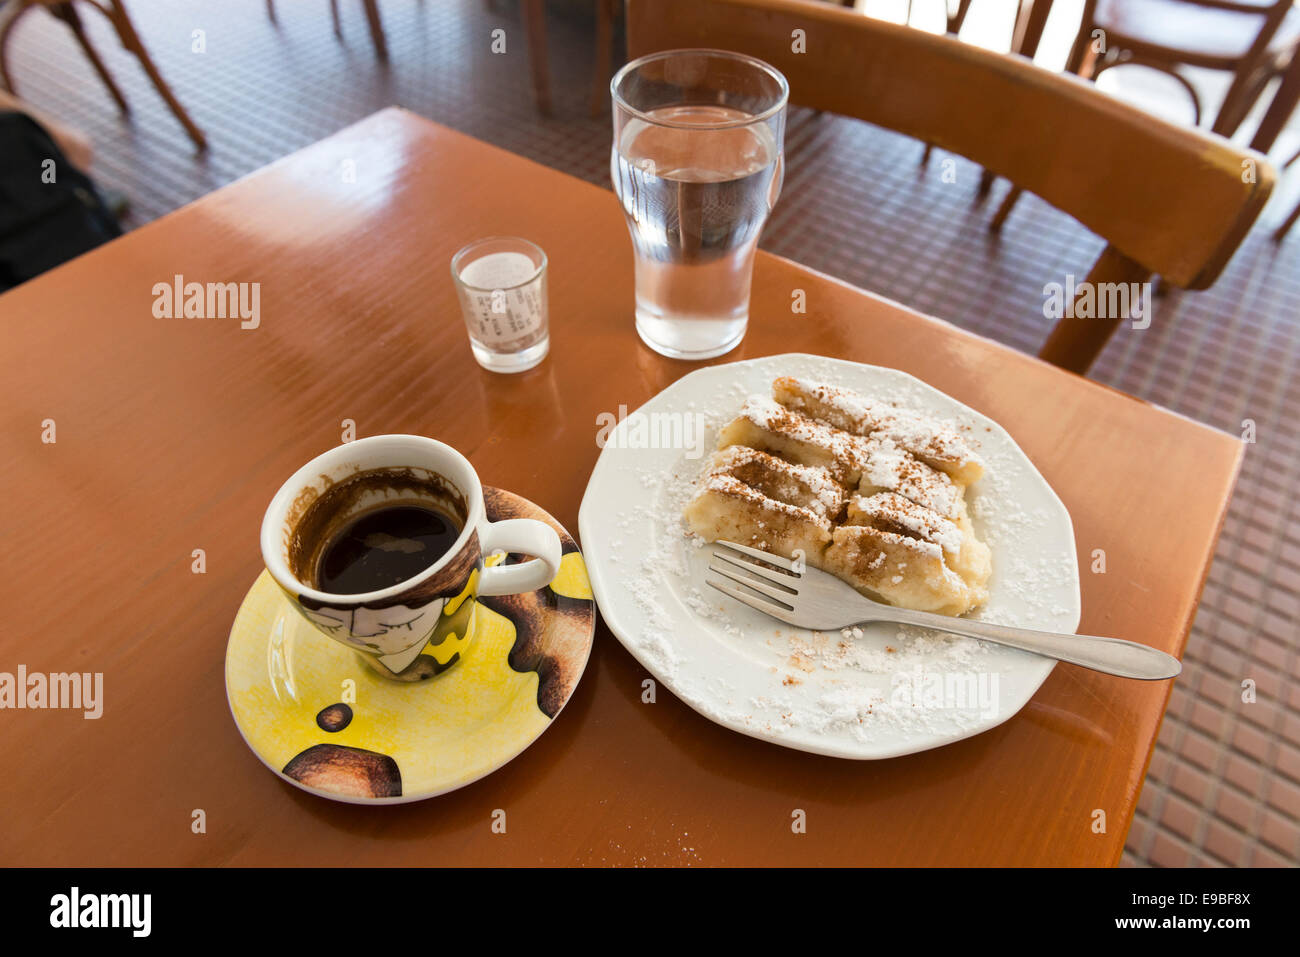 Stilllife de pastelería (Baklava) en el plato, taza de café griego, un vaso de agua y el proyecto de ley en un vaso, la isla de Kos, Grecia Foto de stock